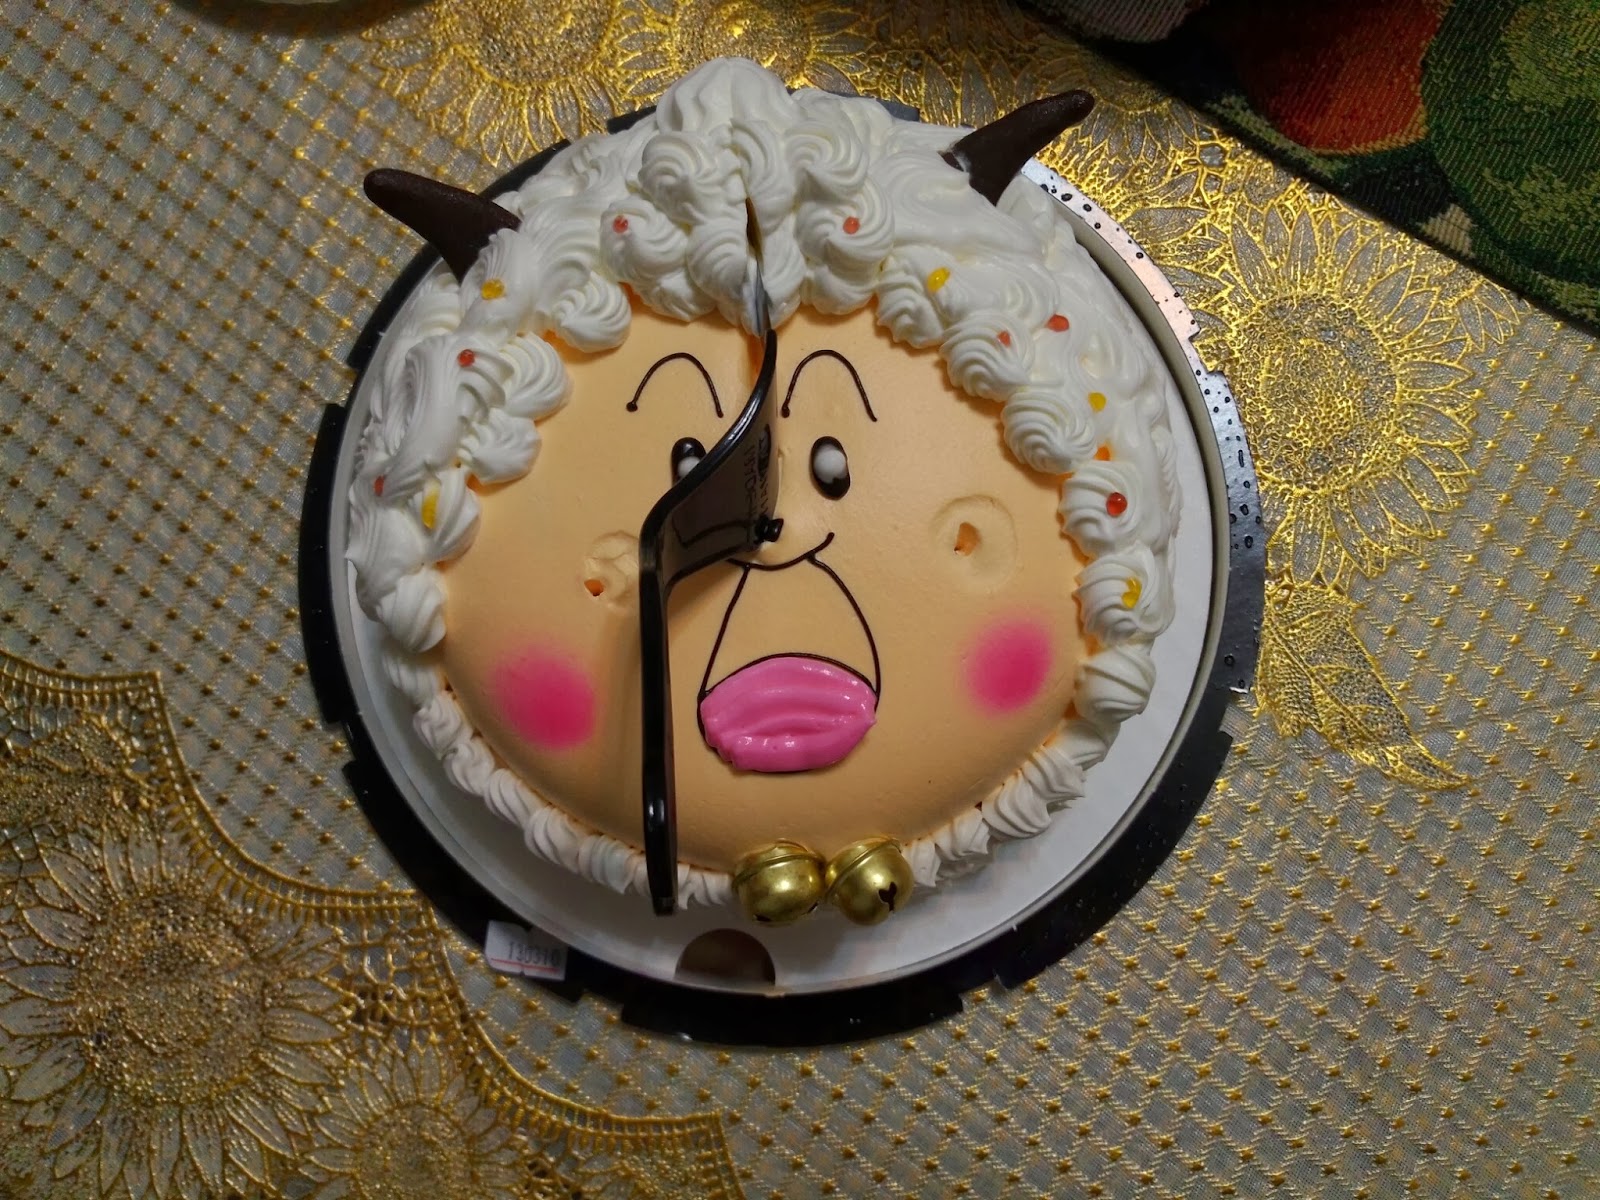 吃喝玩樂: 聖保羅出品之"喜洋洋"生日蛋糕